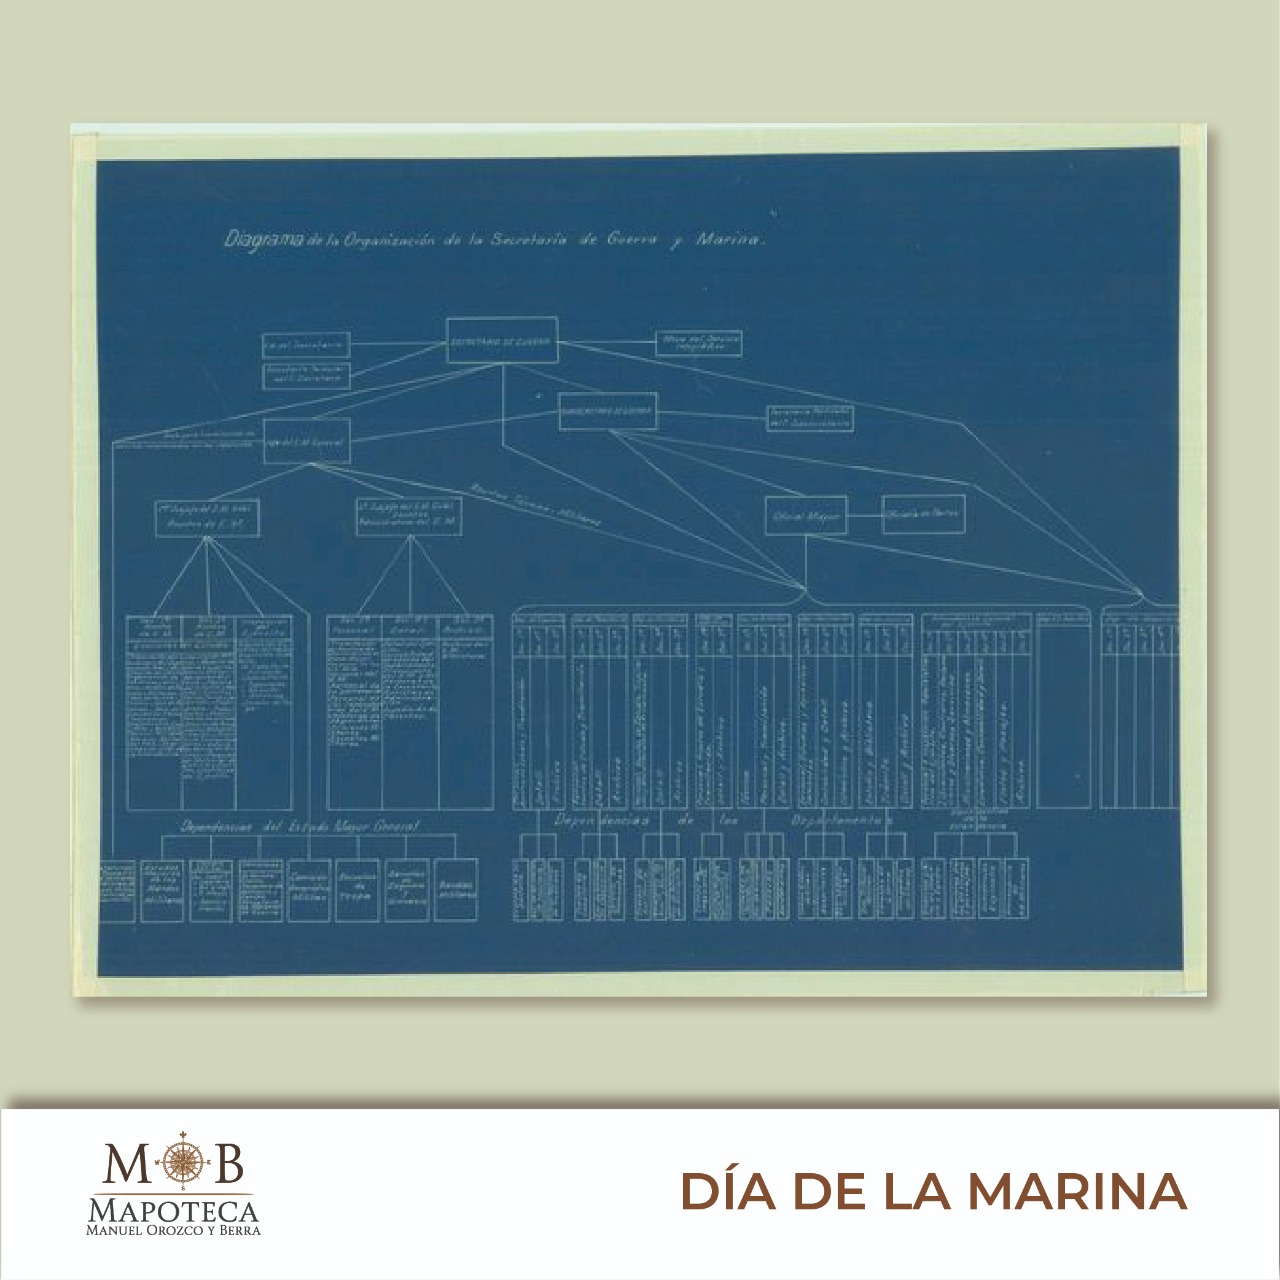 Para conmemorar un año más de esta importante conmemoración, la Mapoteca Manuel Orozco y Berra presenta esta imagen titulada: “Diagrama de la organización de la Secretaría de Guerra y Marina”.